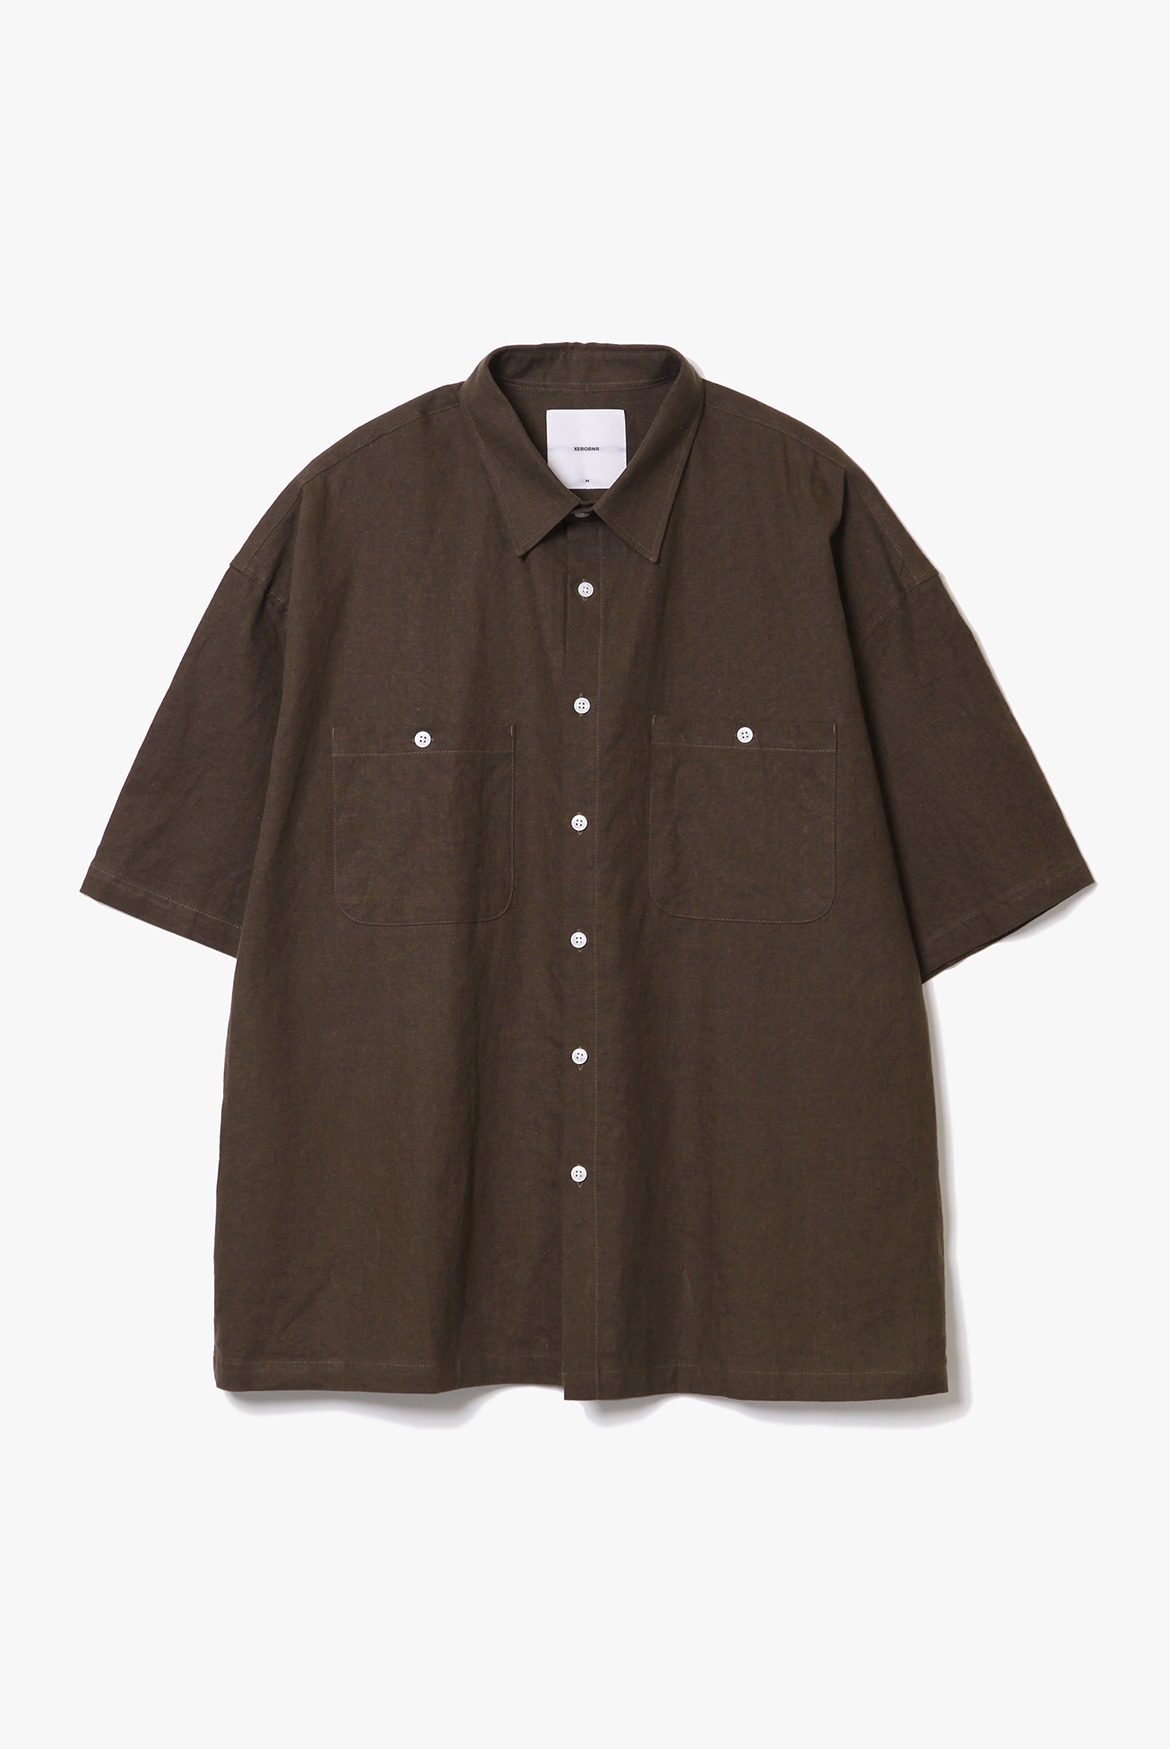 Solid Box Shirts [Brown]